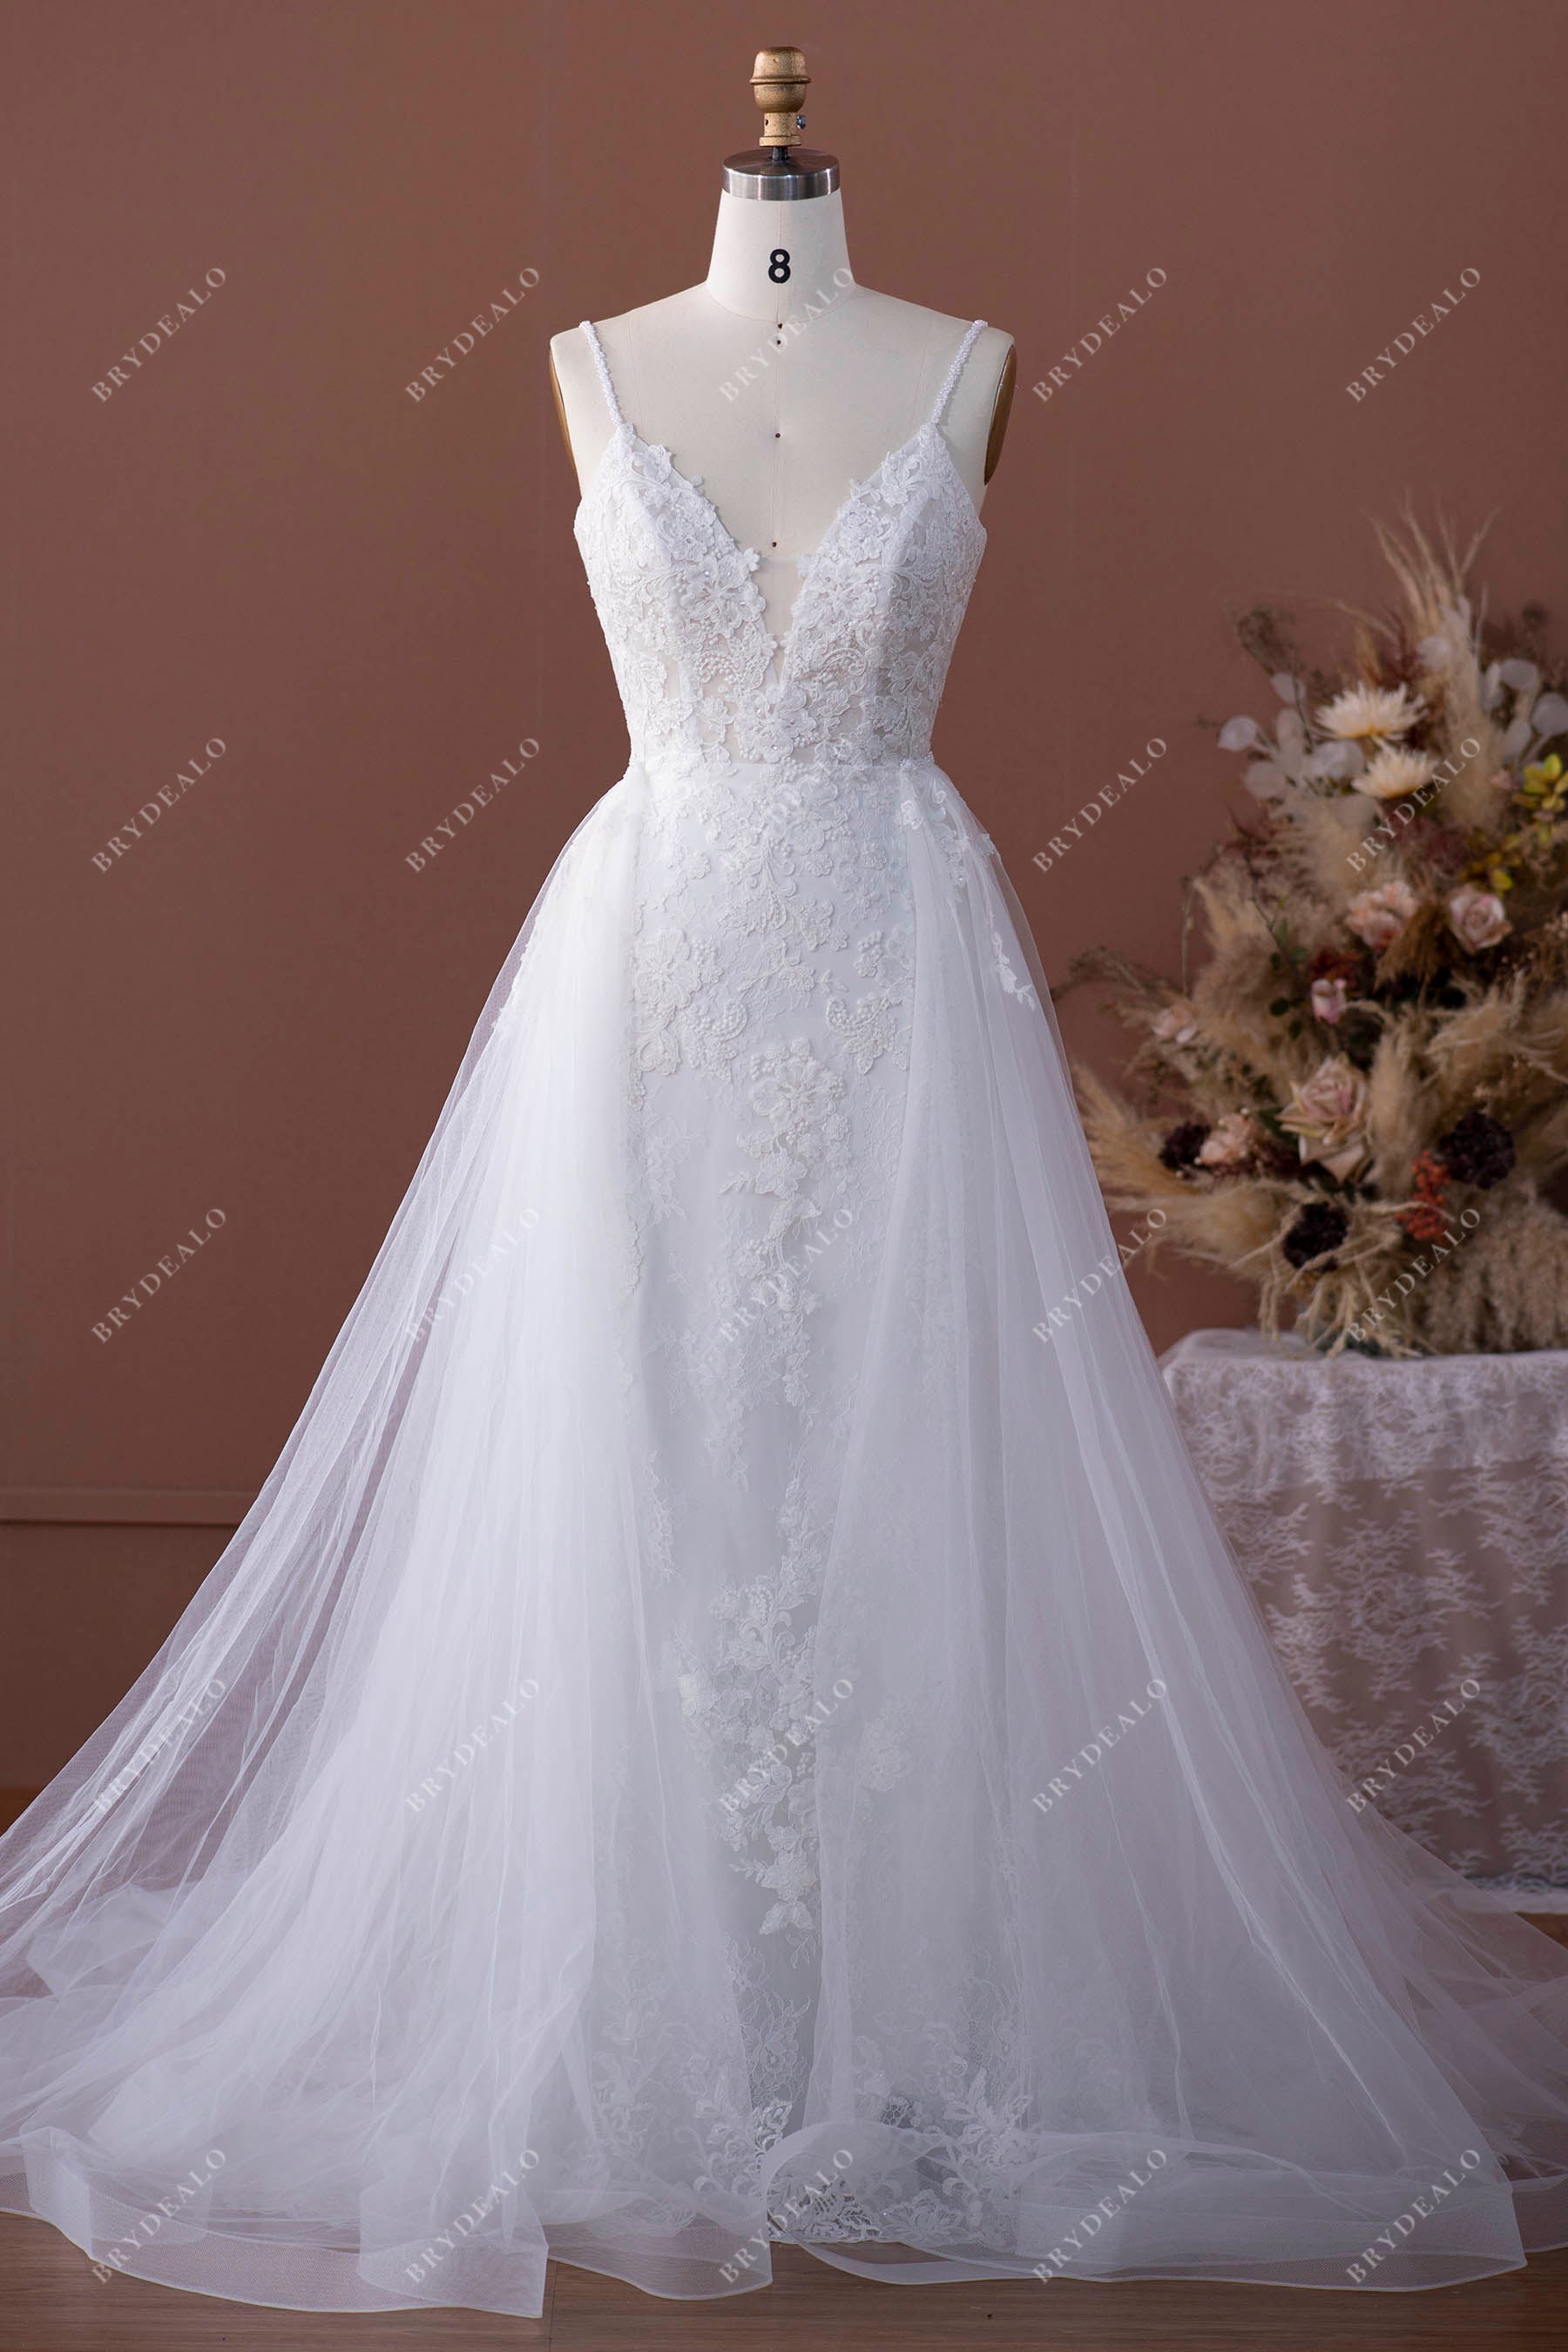 Designer Lace Beaded Spaghetti Straps Overskirt Wedding Dress